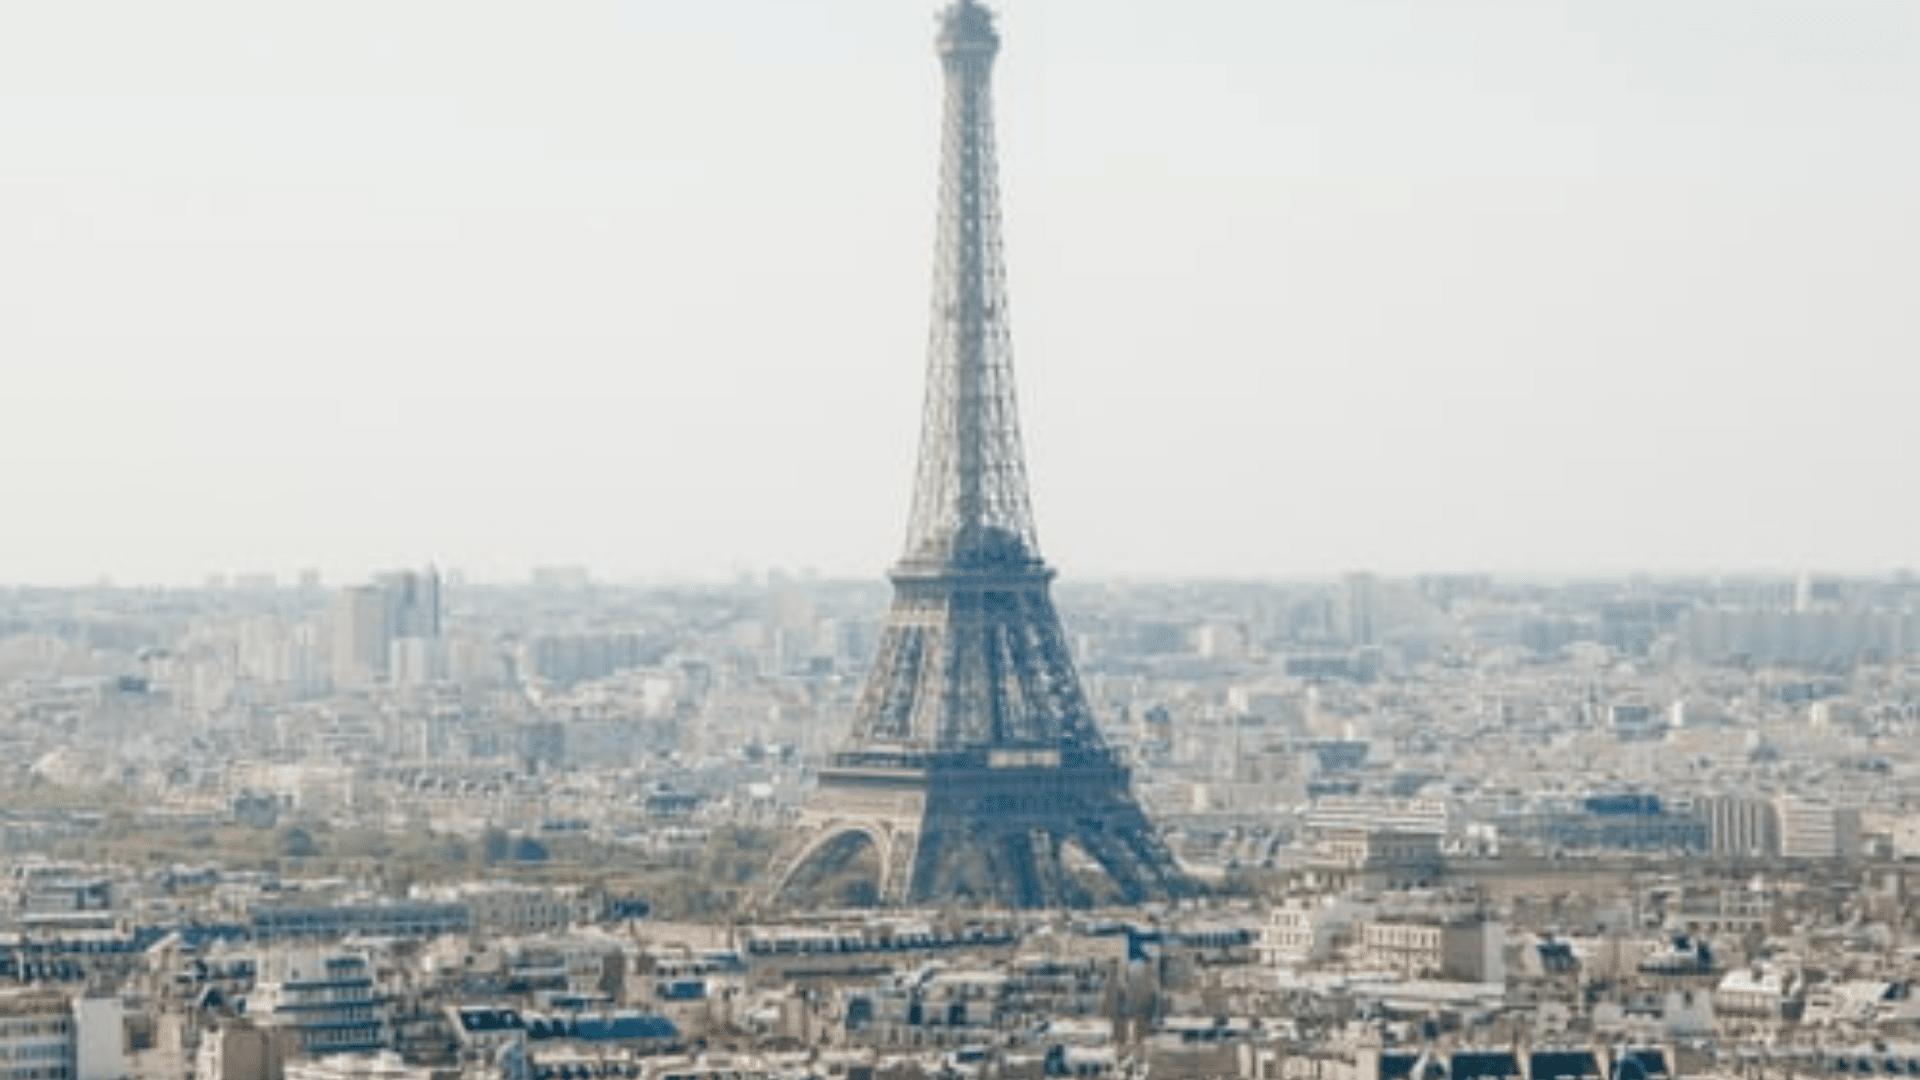 Paris Eiffelturm